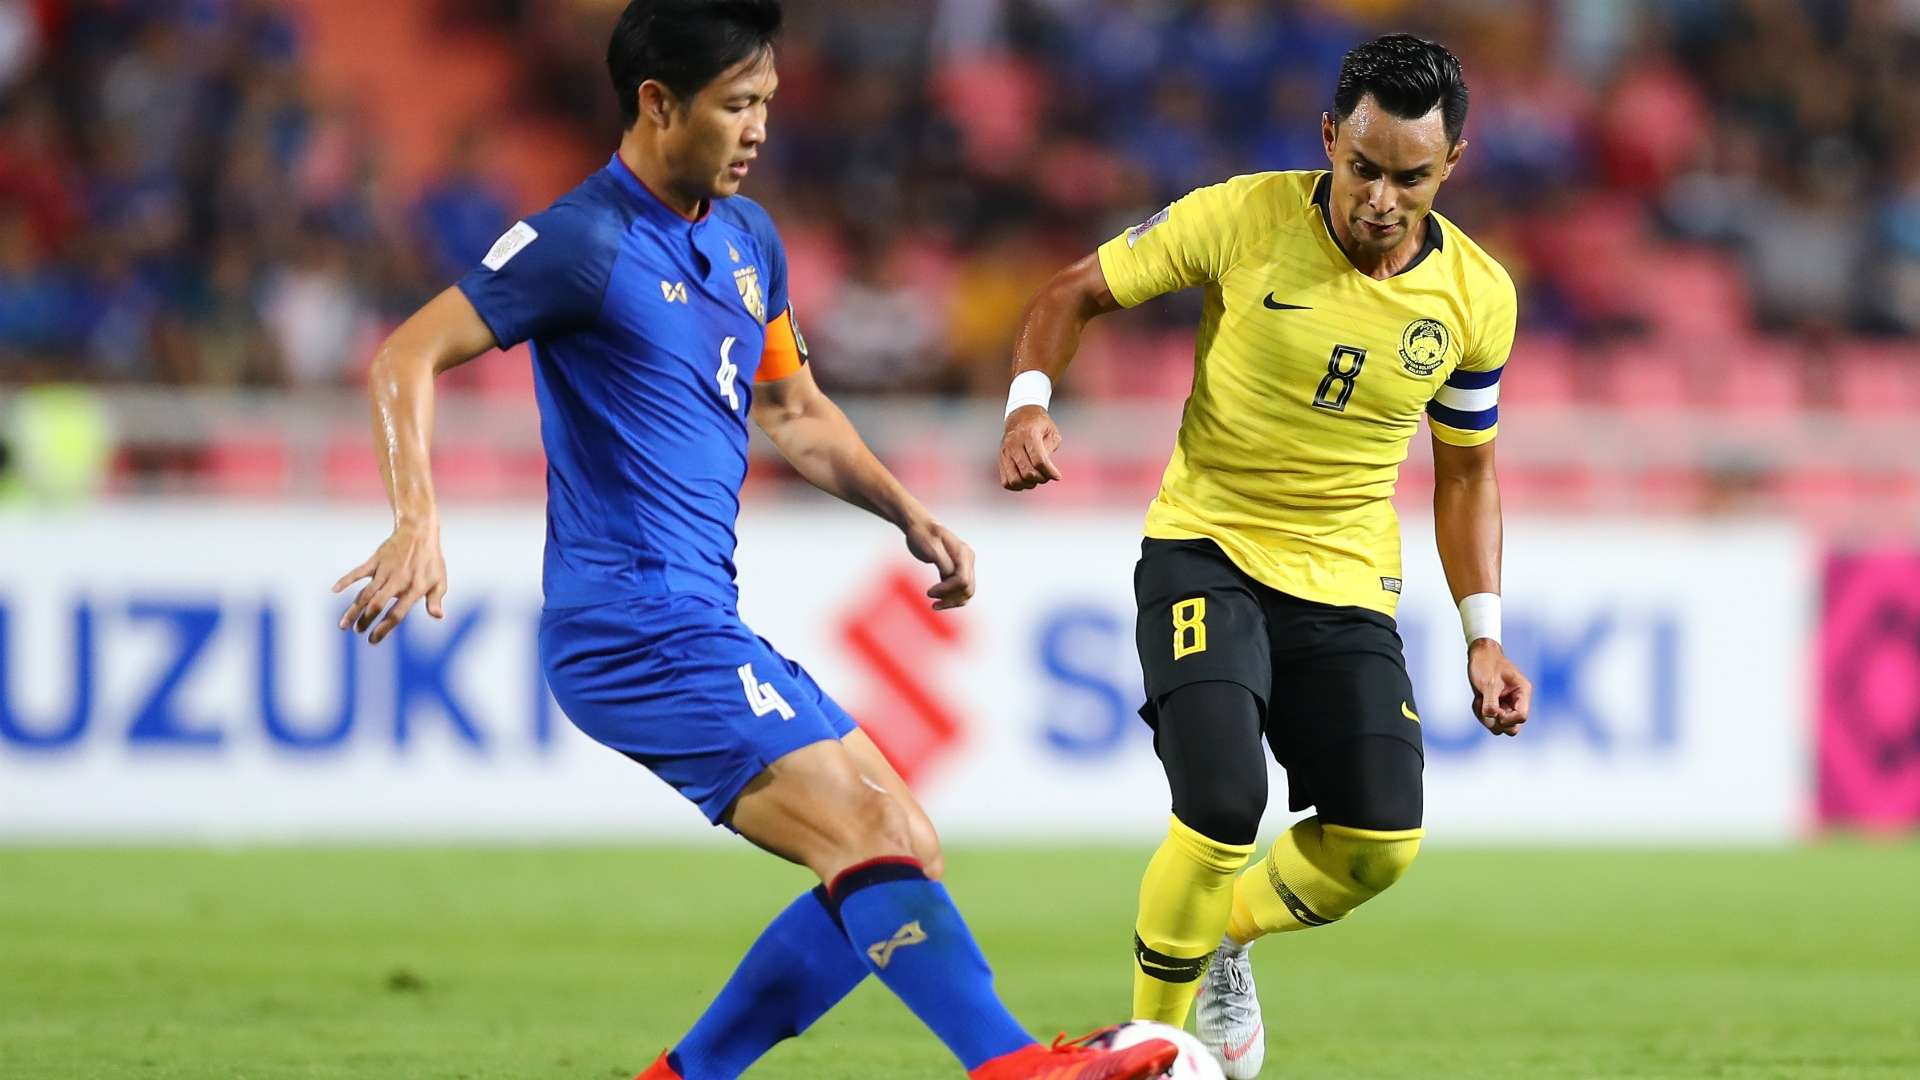 Zaquan Adha, Malaysia, 2018 AFF Suzuki Cup